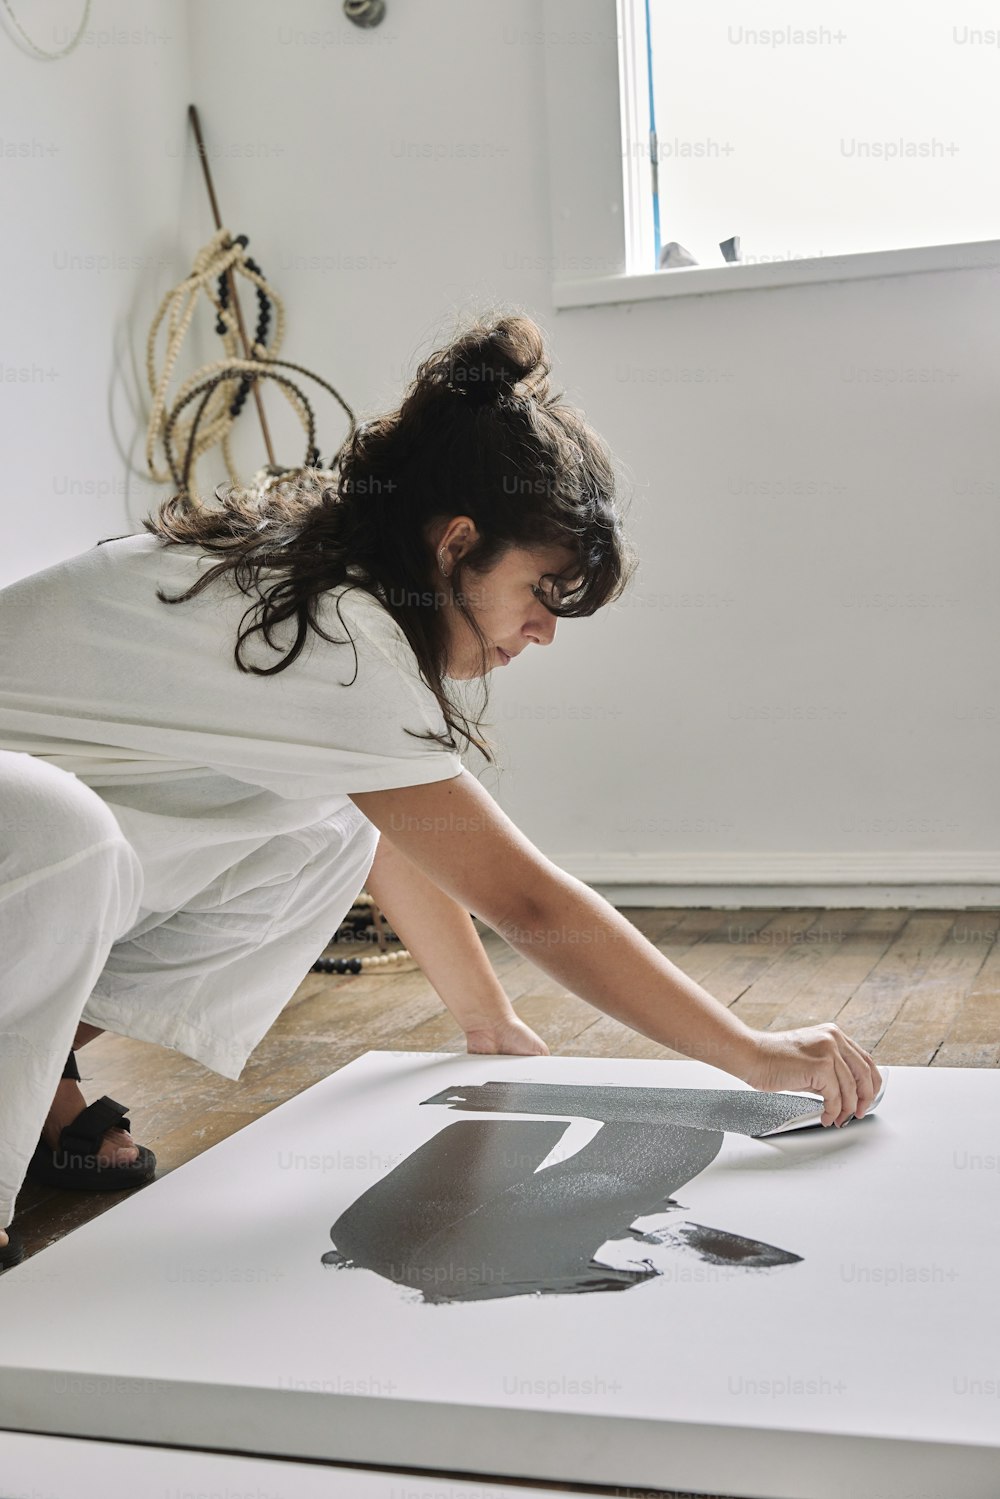 uma mulher em um vestido branco está pintando uma imagem